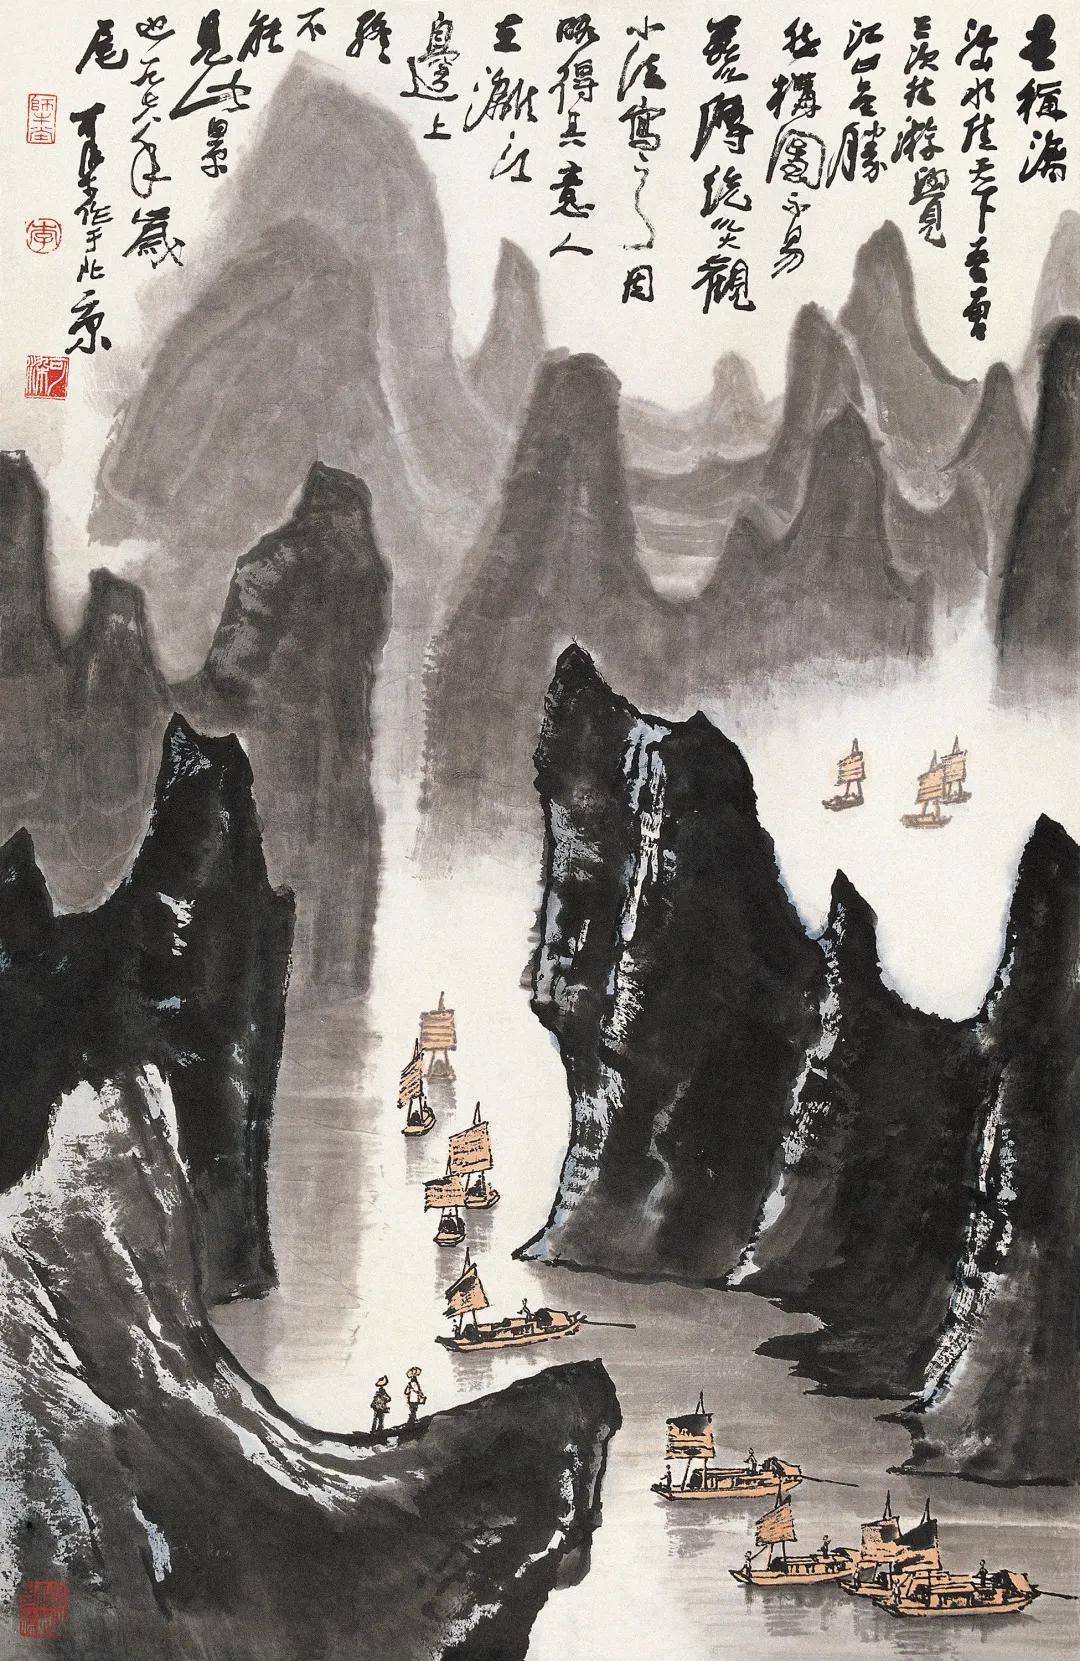 可染笔底烟霞——李可染《漓江胜景图》